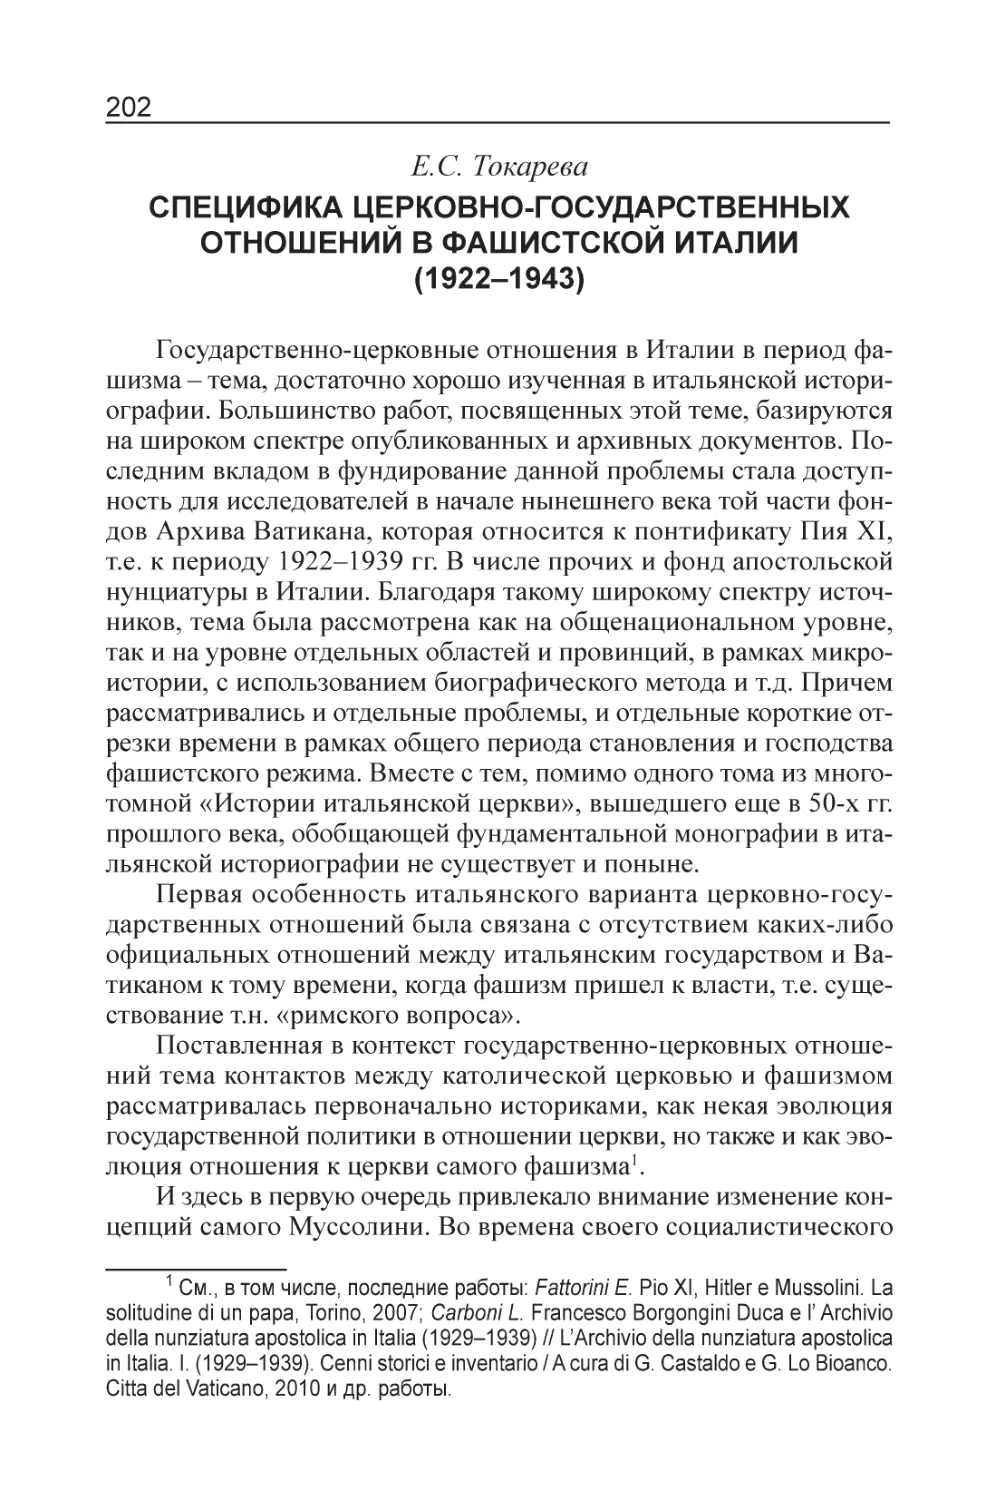 Токарева Е.С. Специфика церковно-государственных отношений в фашистской Италии (1922–1943)